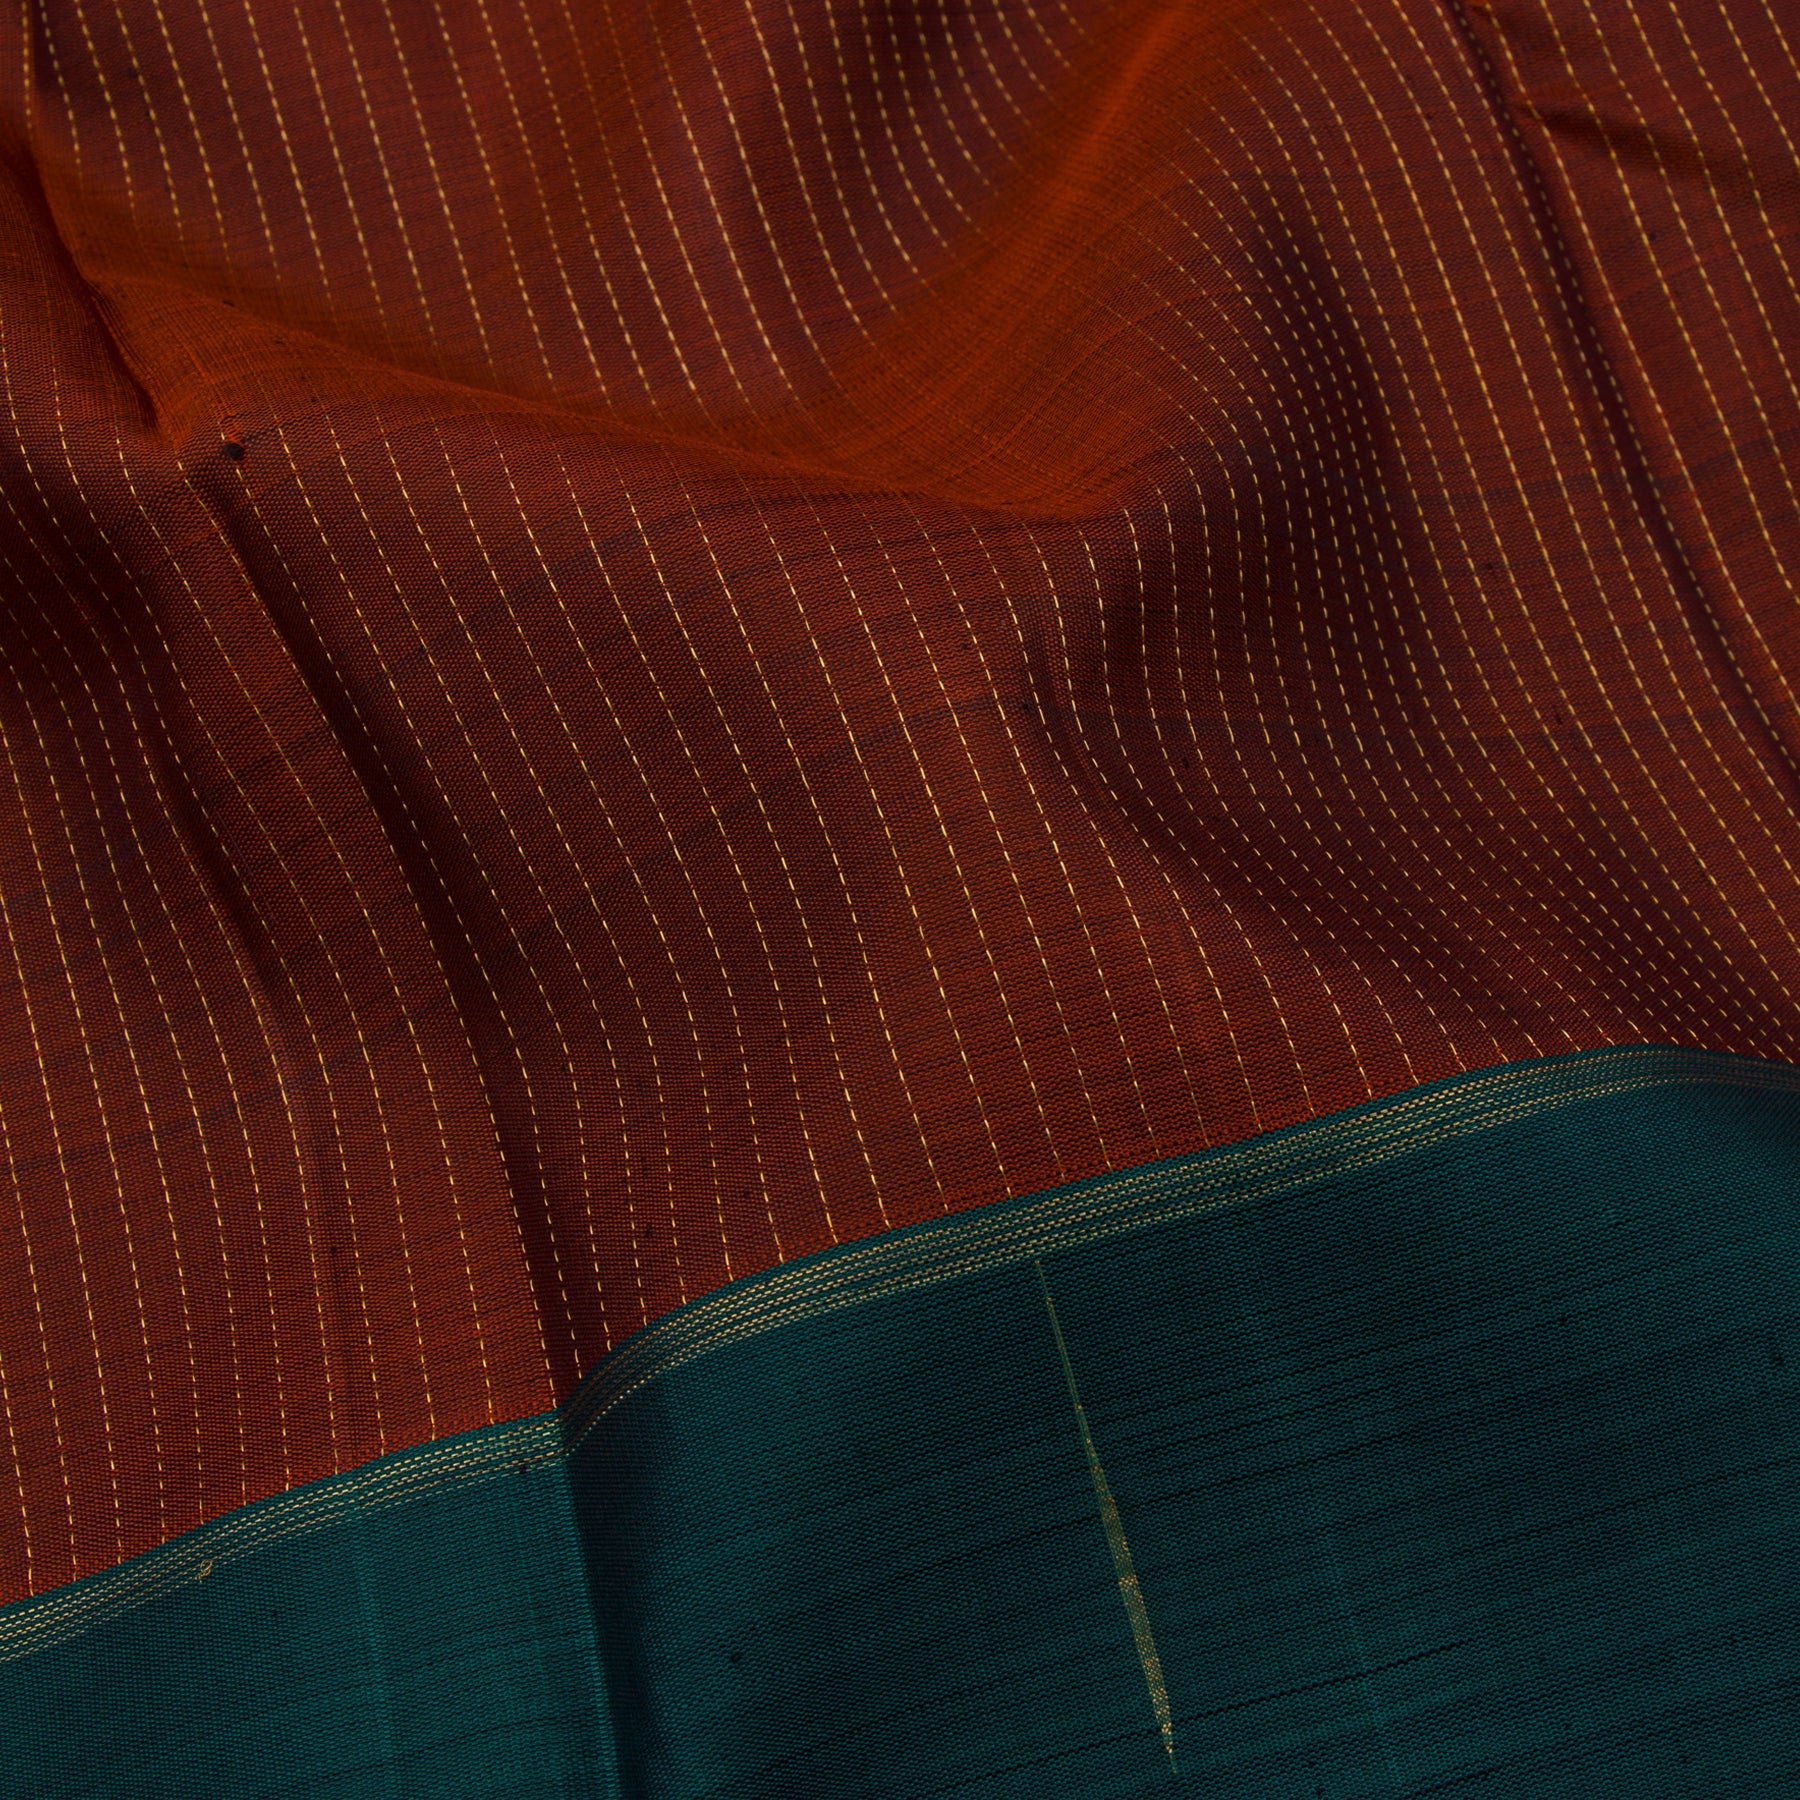 Kanakavalli Kanjivaram Silk Sari 23-599-HS001-00710 - Fabric View